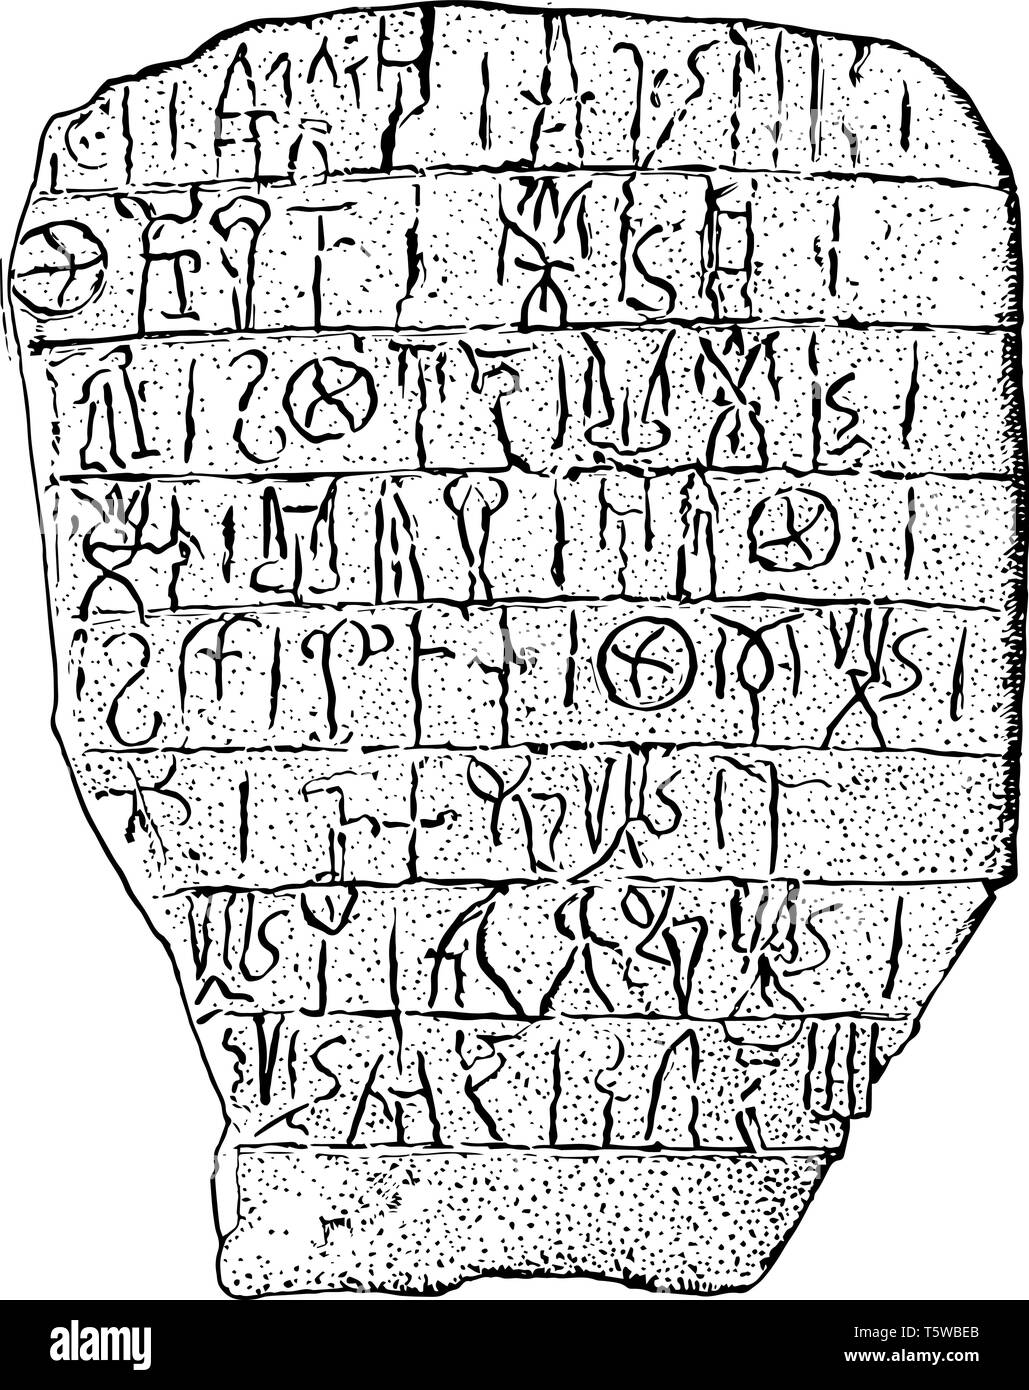 Kretische Schreiben oder lineare Skript im Palast Gnossus undeciphered Hieroglyphen vintage Strichzeichnung oder Gravur Abbildung stammt. Stock Vektor